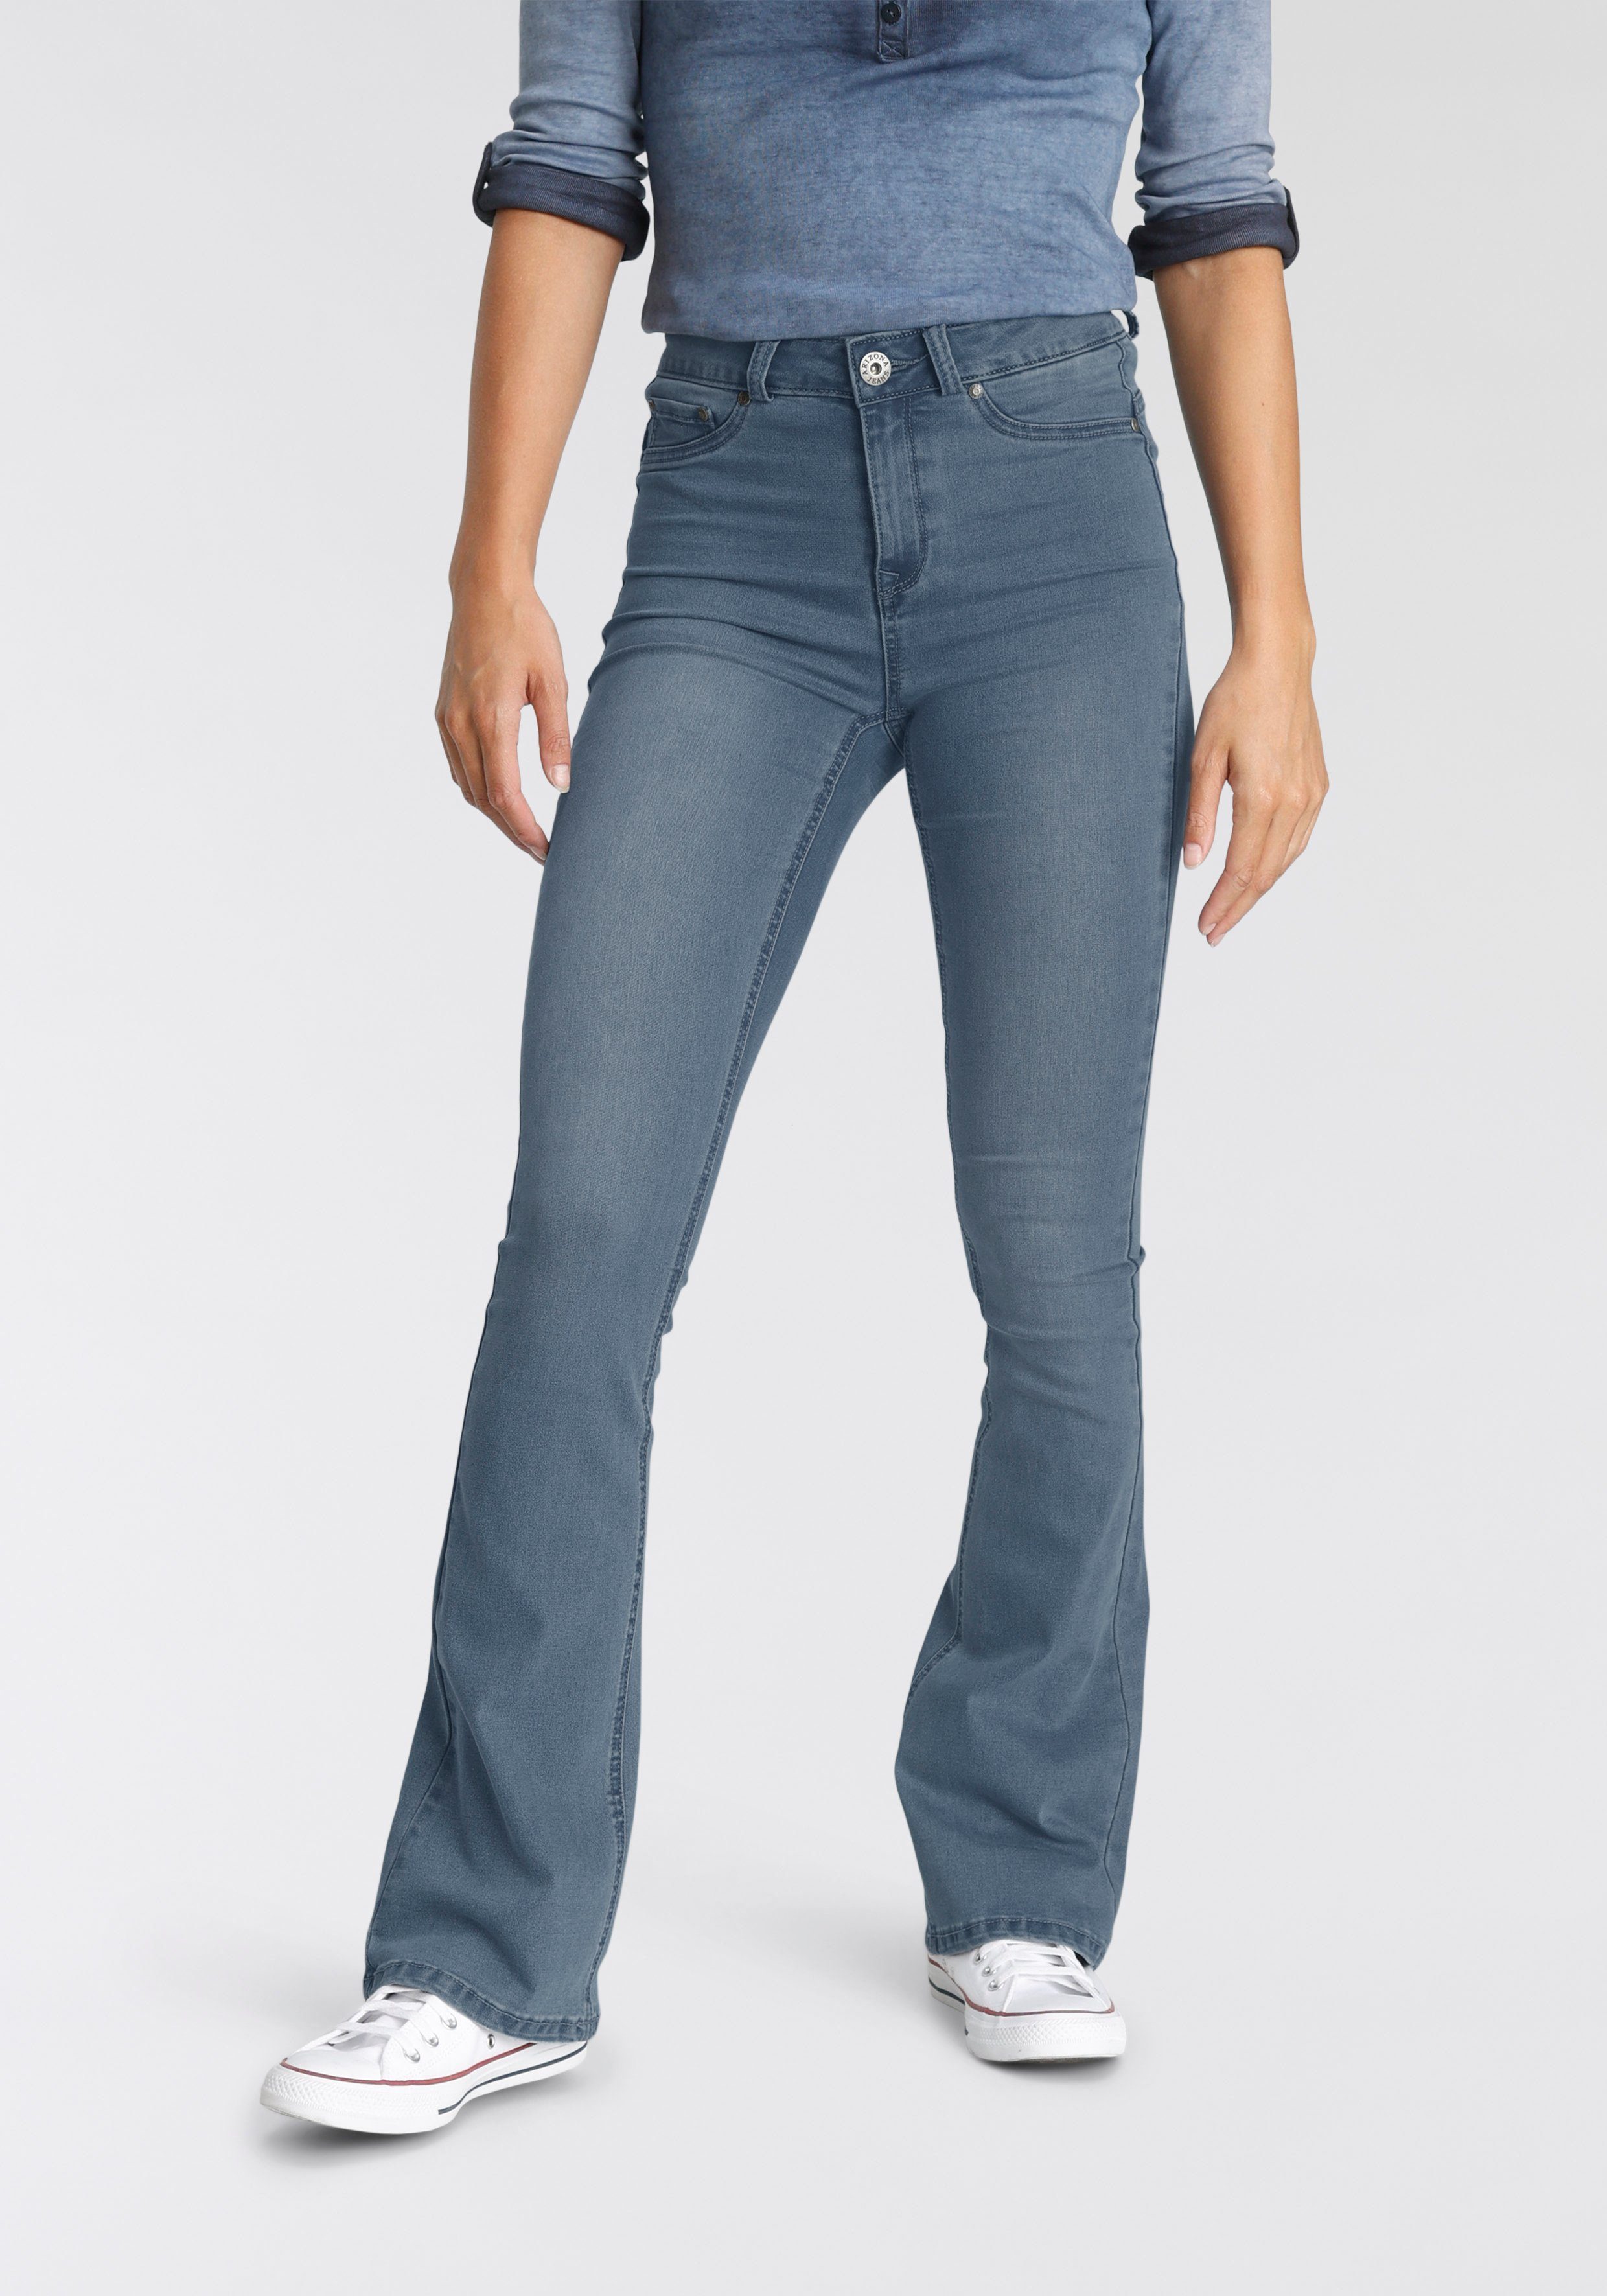 Zeitlich begrenzt Arizona Bootcut-Jeans Ultra Stretch High Shapingnähten blue-used mit Waist